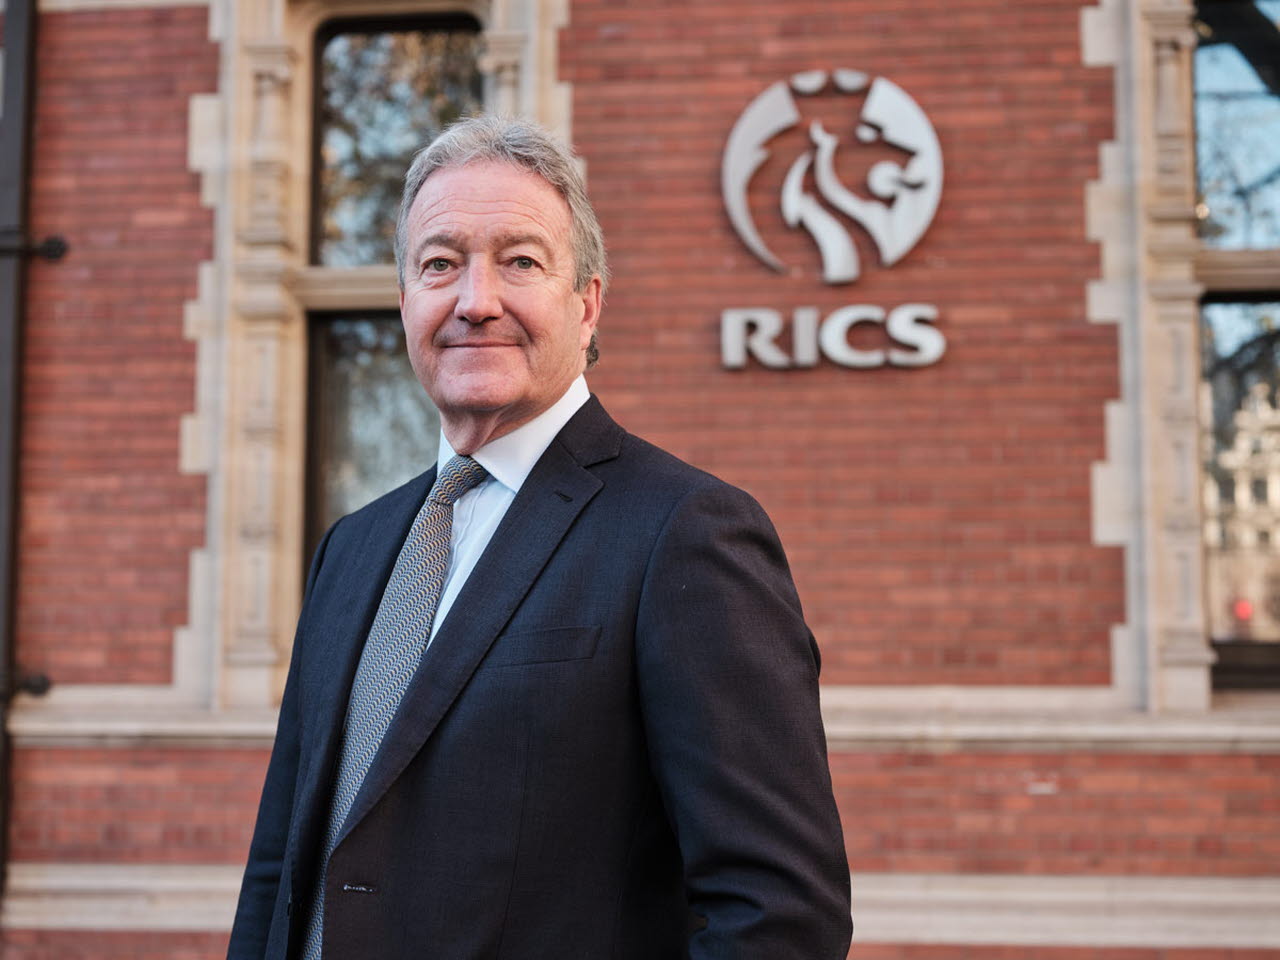 Martin Samworth to chair new RICS board